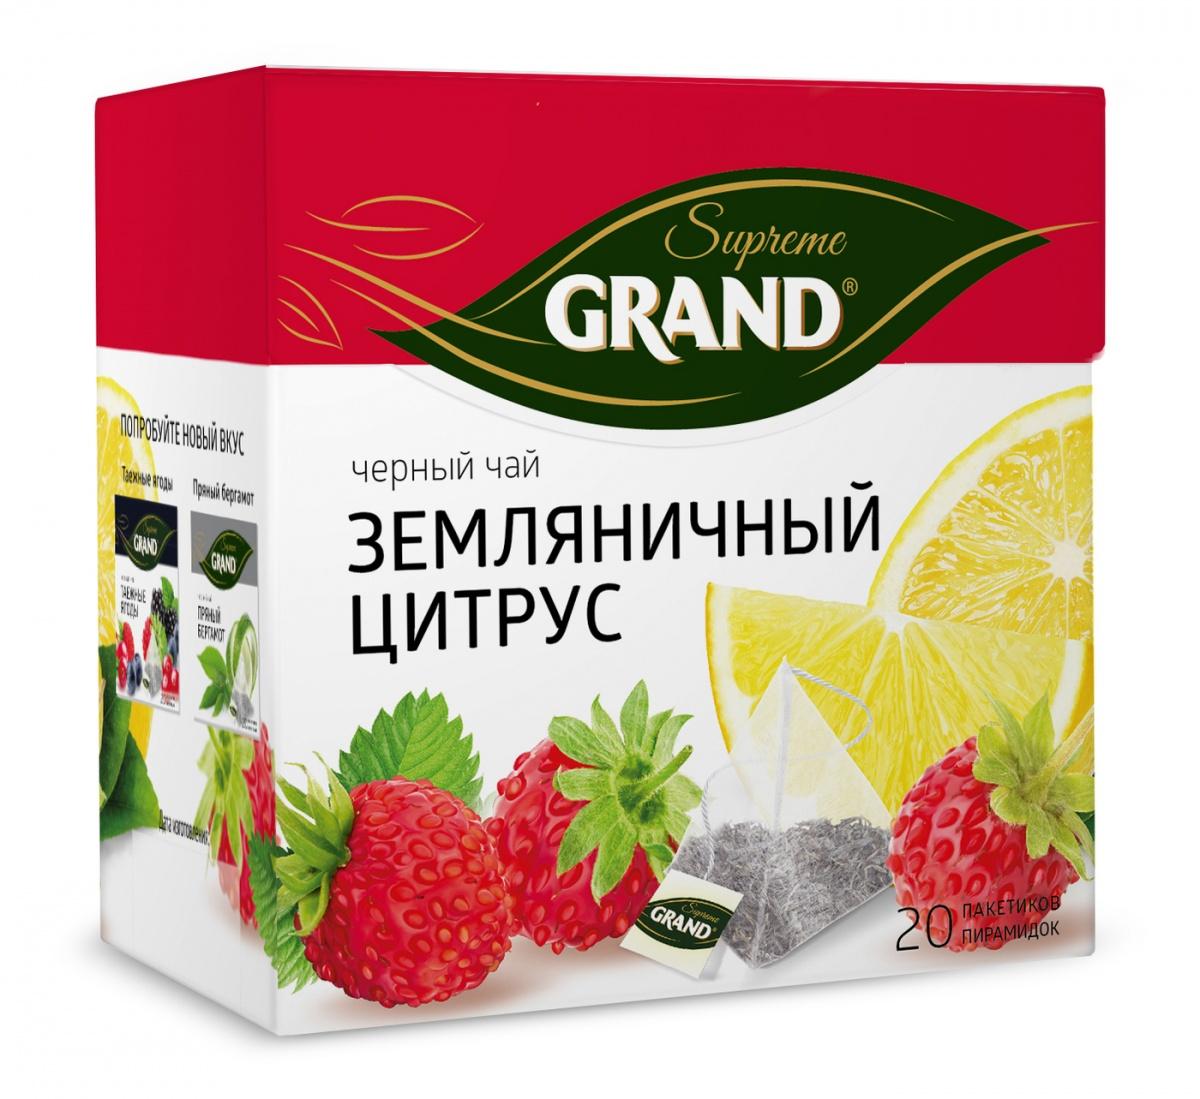 Чай Grand Supreme Земляничный цитрус черный 20 пирамидок, 36 гр., картон